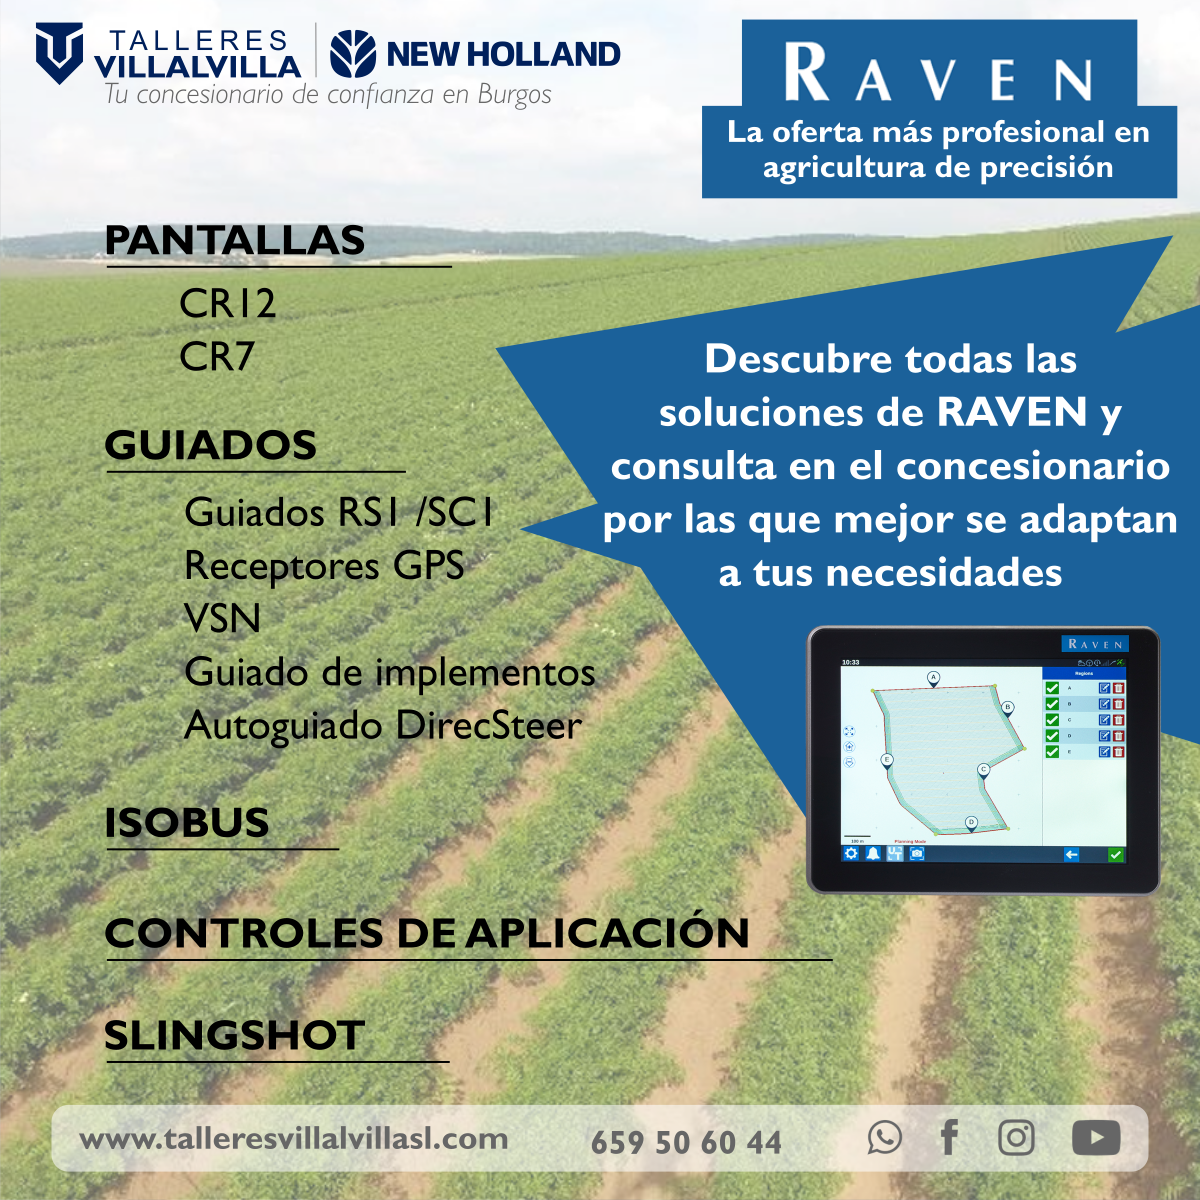 RAVEN: LA OFERTA MÁS PROFESIONAL EN AGRICULTURA DE PRECISIÓN